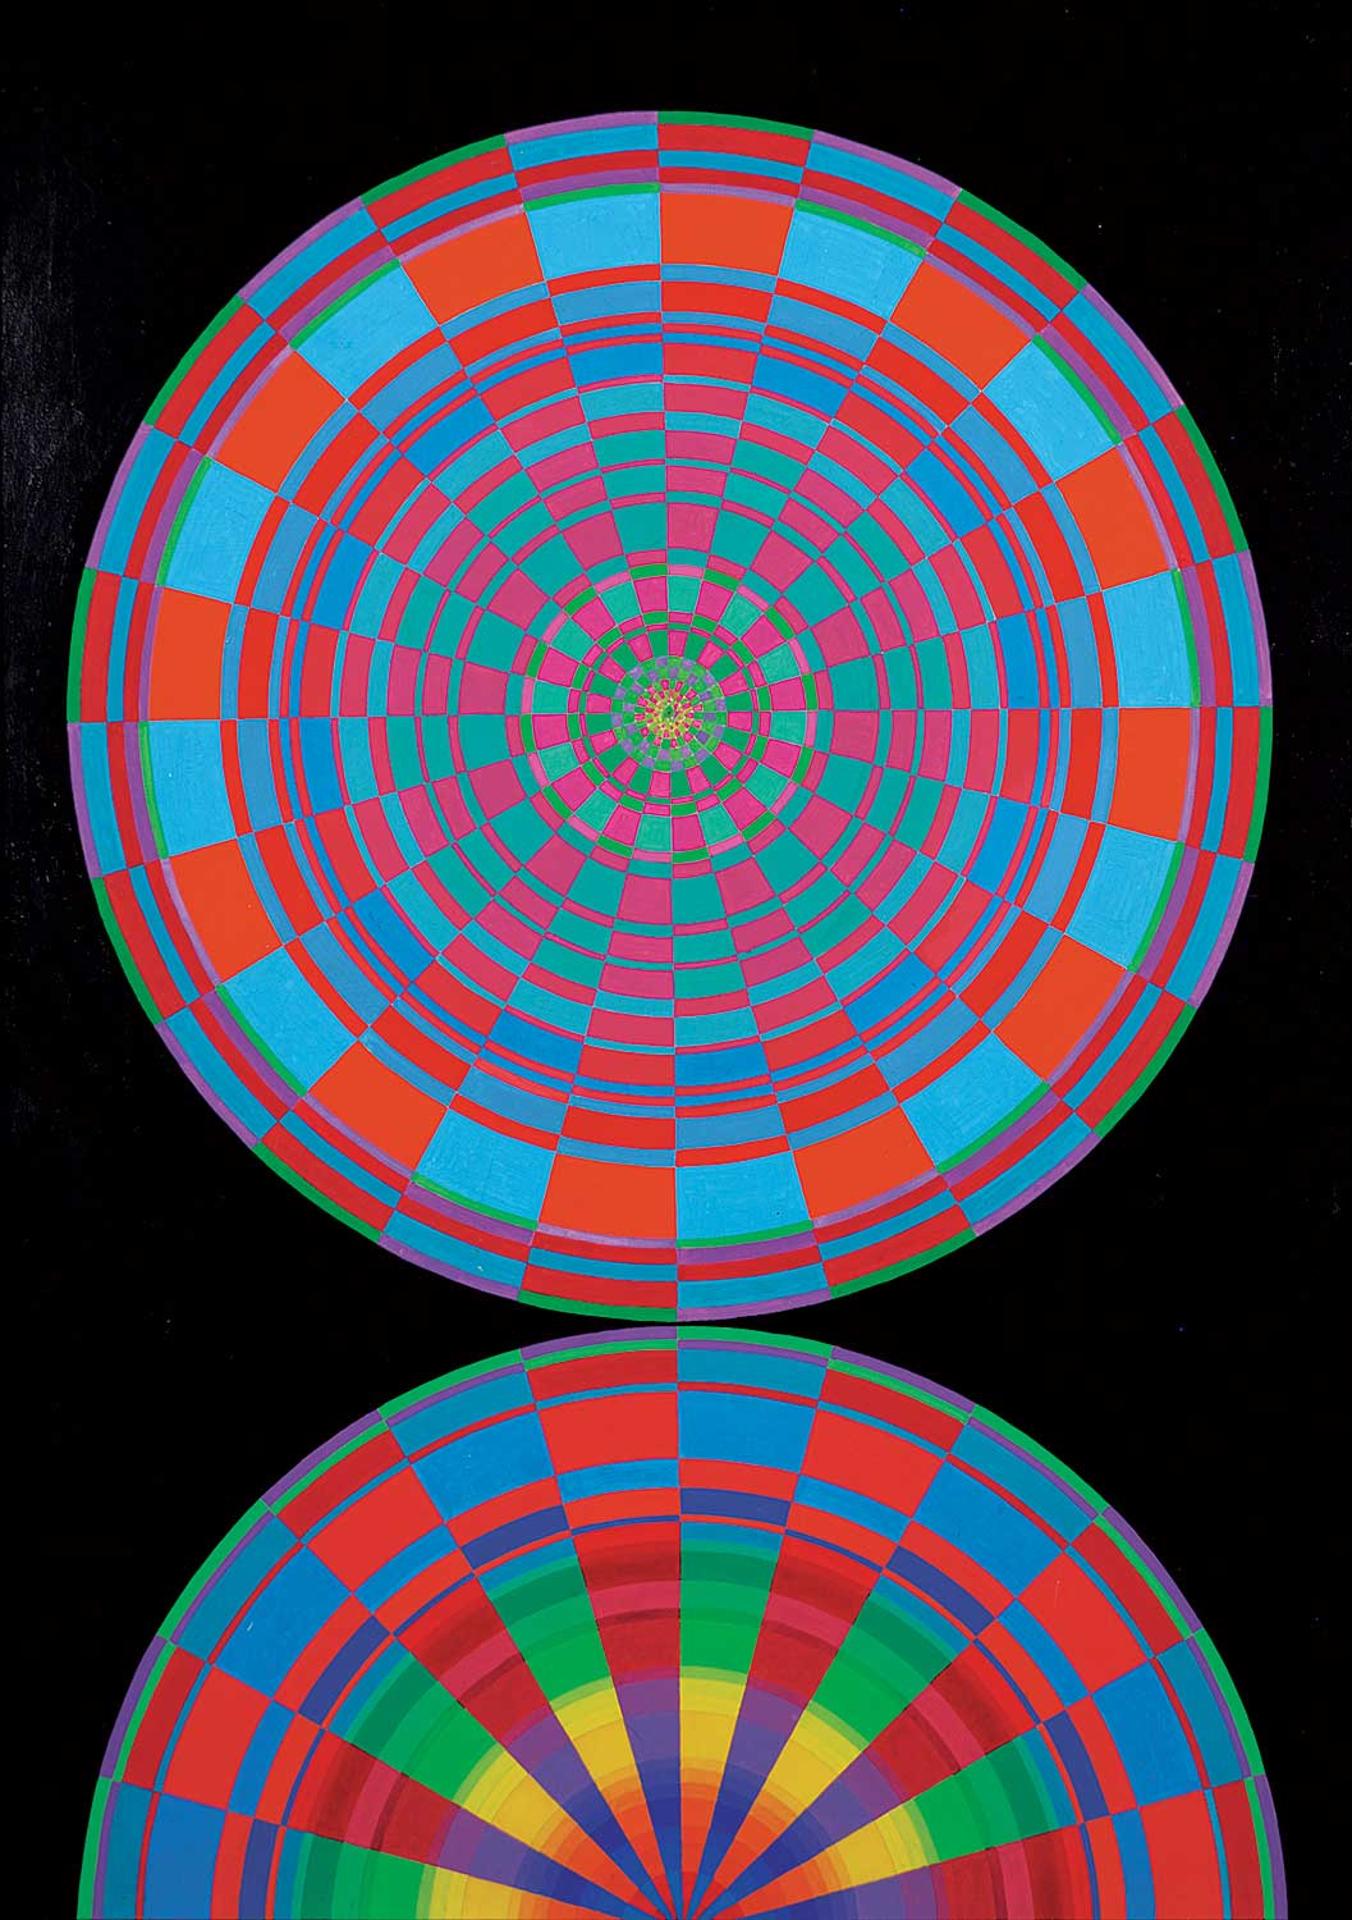 Greg Harland Arnold (1916-1968) - Untitled - Kaleidoscope